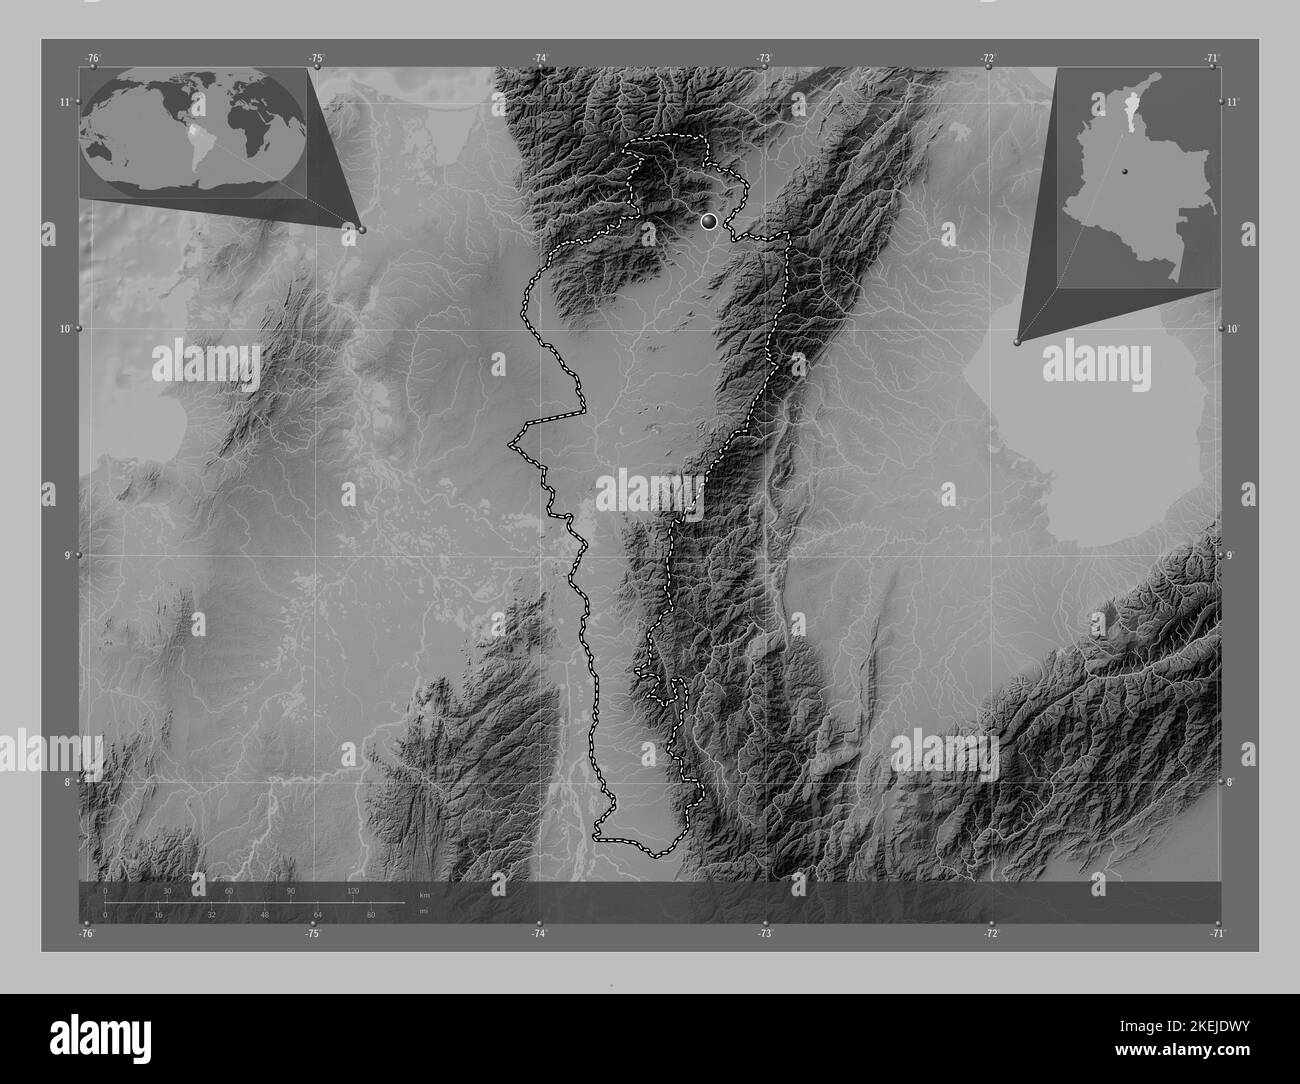 Cesar, département de Colombie. Carte d'altitude en niveaux de gris avec lacs et rivières. Cartes d'emplacement auxiliaire d'angle Banque D'Images